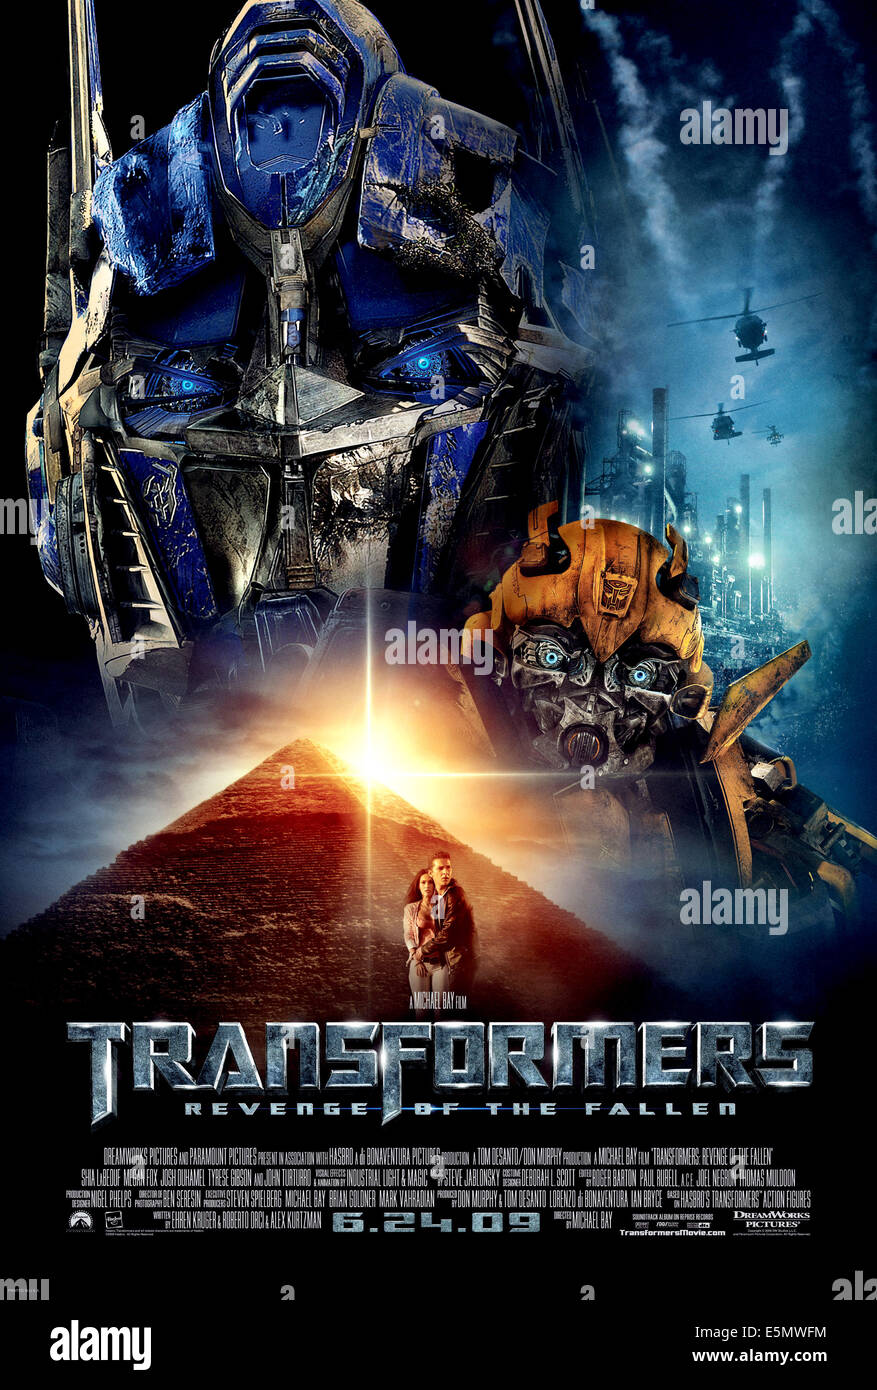 Harte Action mit Transformers-Star: Im Heimkino kämpft Megan Fox